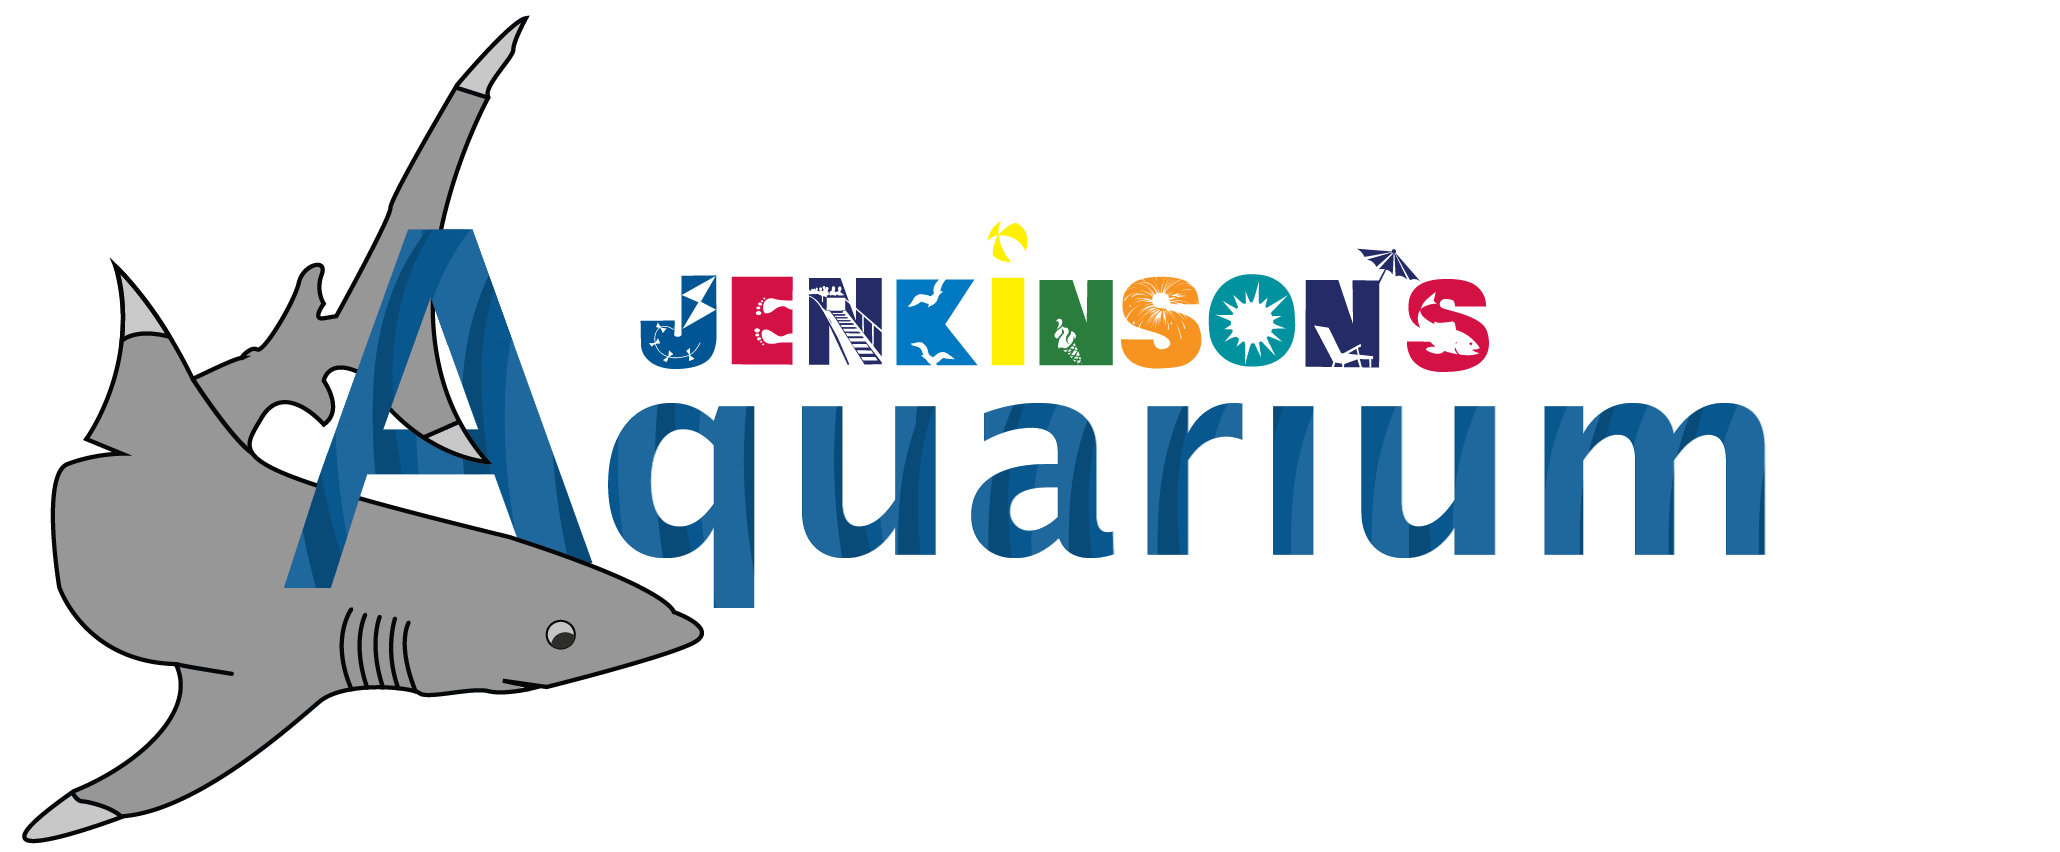 The logo for Jenkinson's Aquarium